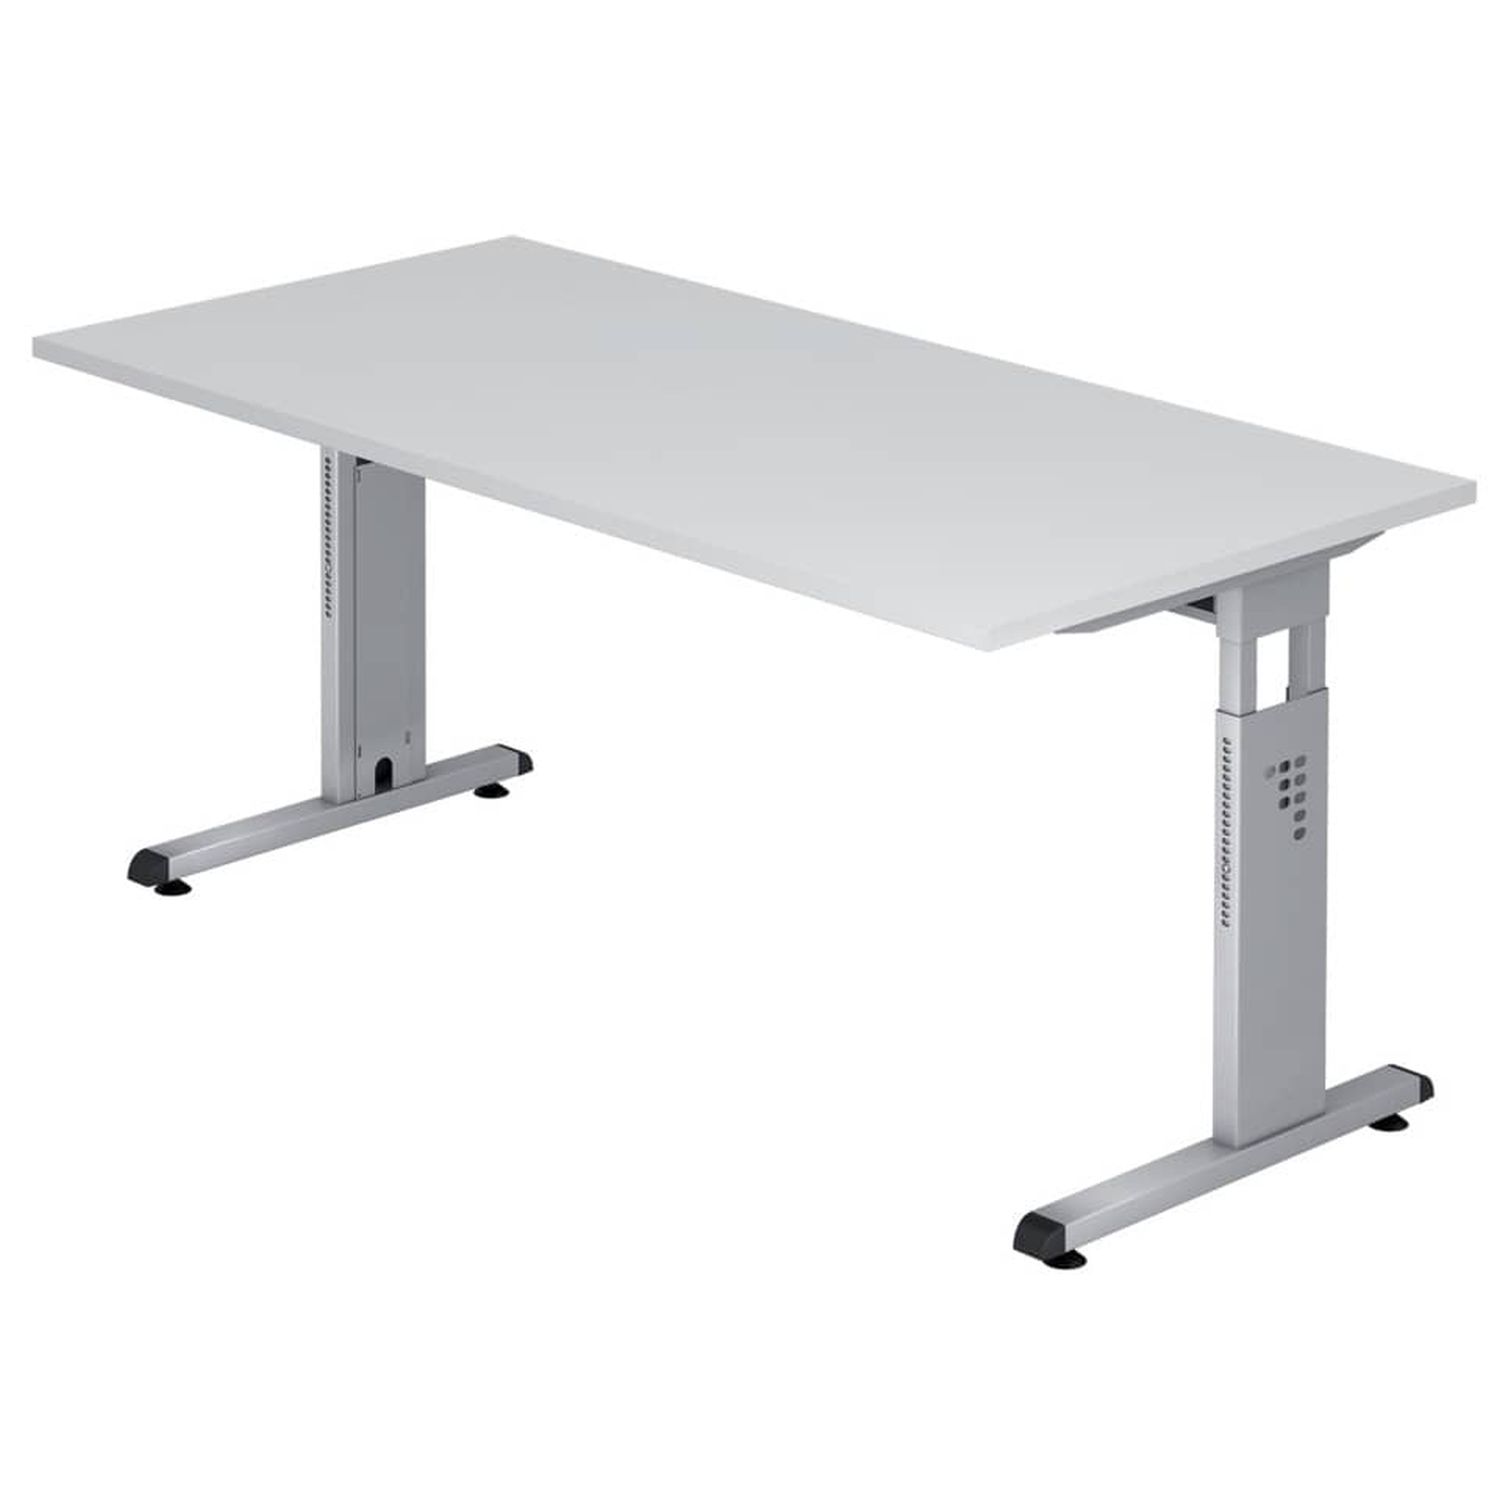 Schreibtisch C-Fuß - 160 x 65-85 x 80 cm, höhenverstellbar, Weiß/Silber, mit Montageservice